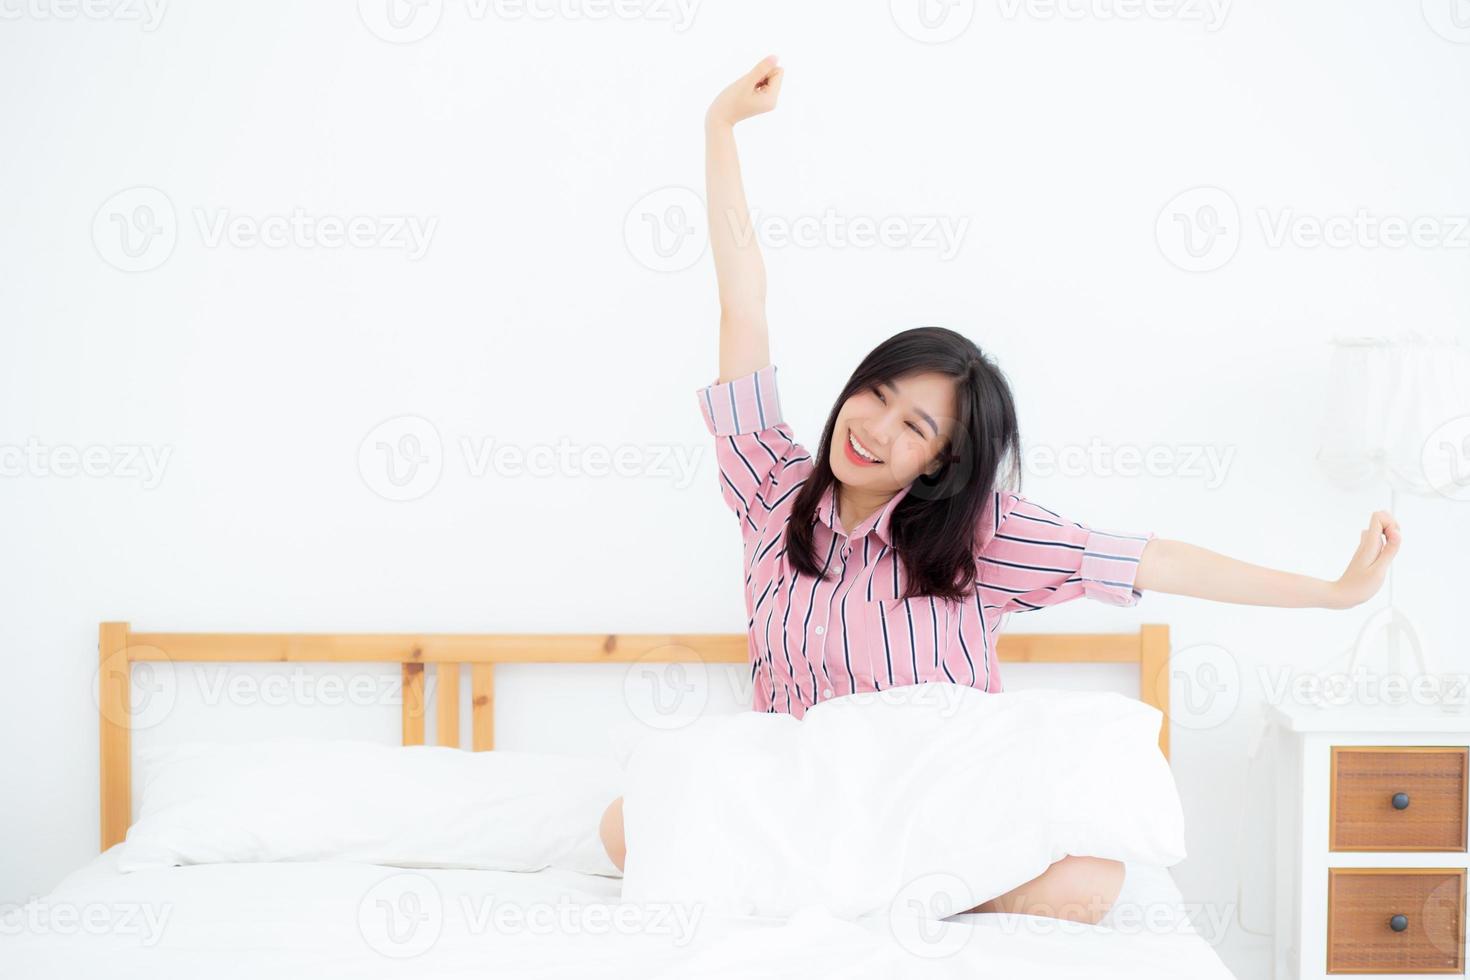 belle de portrait jeune femme asiatique s'étirer et se détendre dans son lit après s'être réveillé le matin dans la chambre, nouveau jour et se reposer pour le bien-être, concept de style de vie. photo